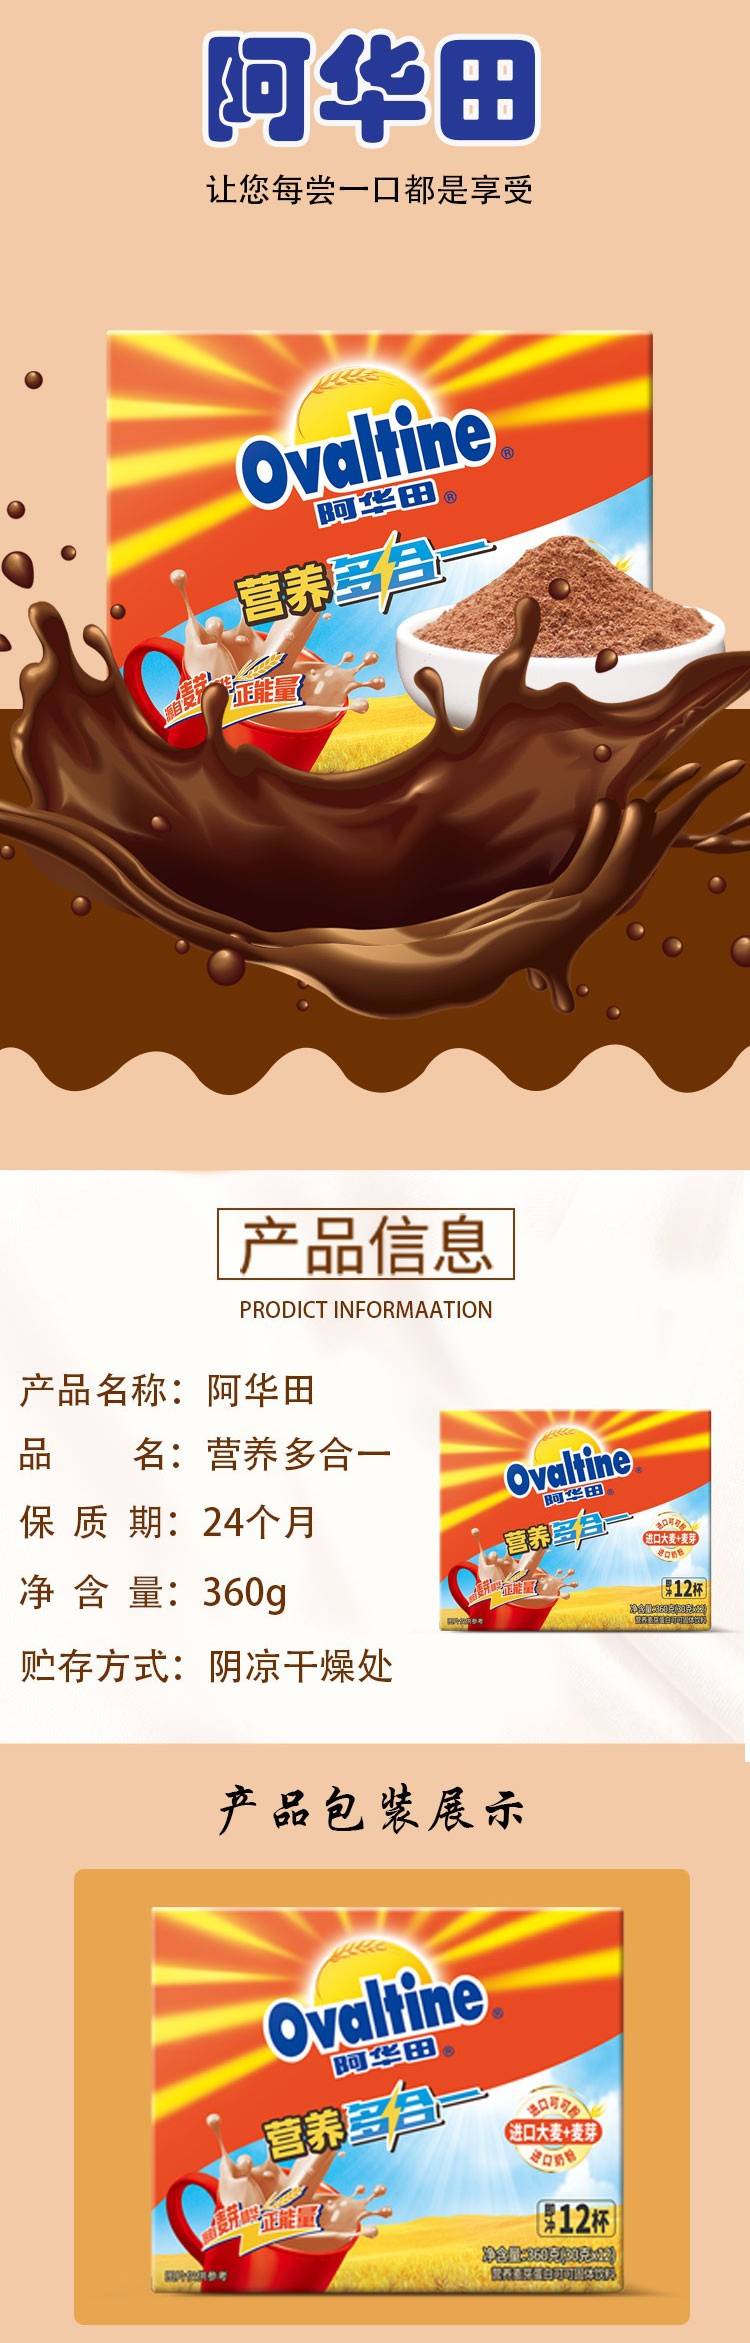 阿华田ovaltine 可可粉360g营养多合一早餐代餐 麦芽蛋白型固体饮料